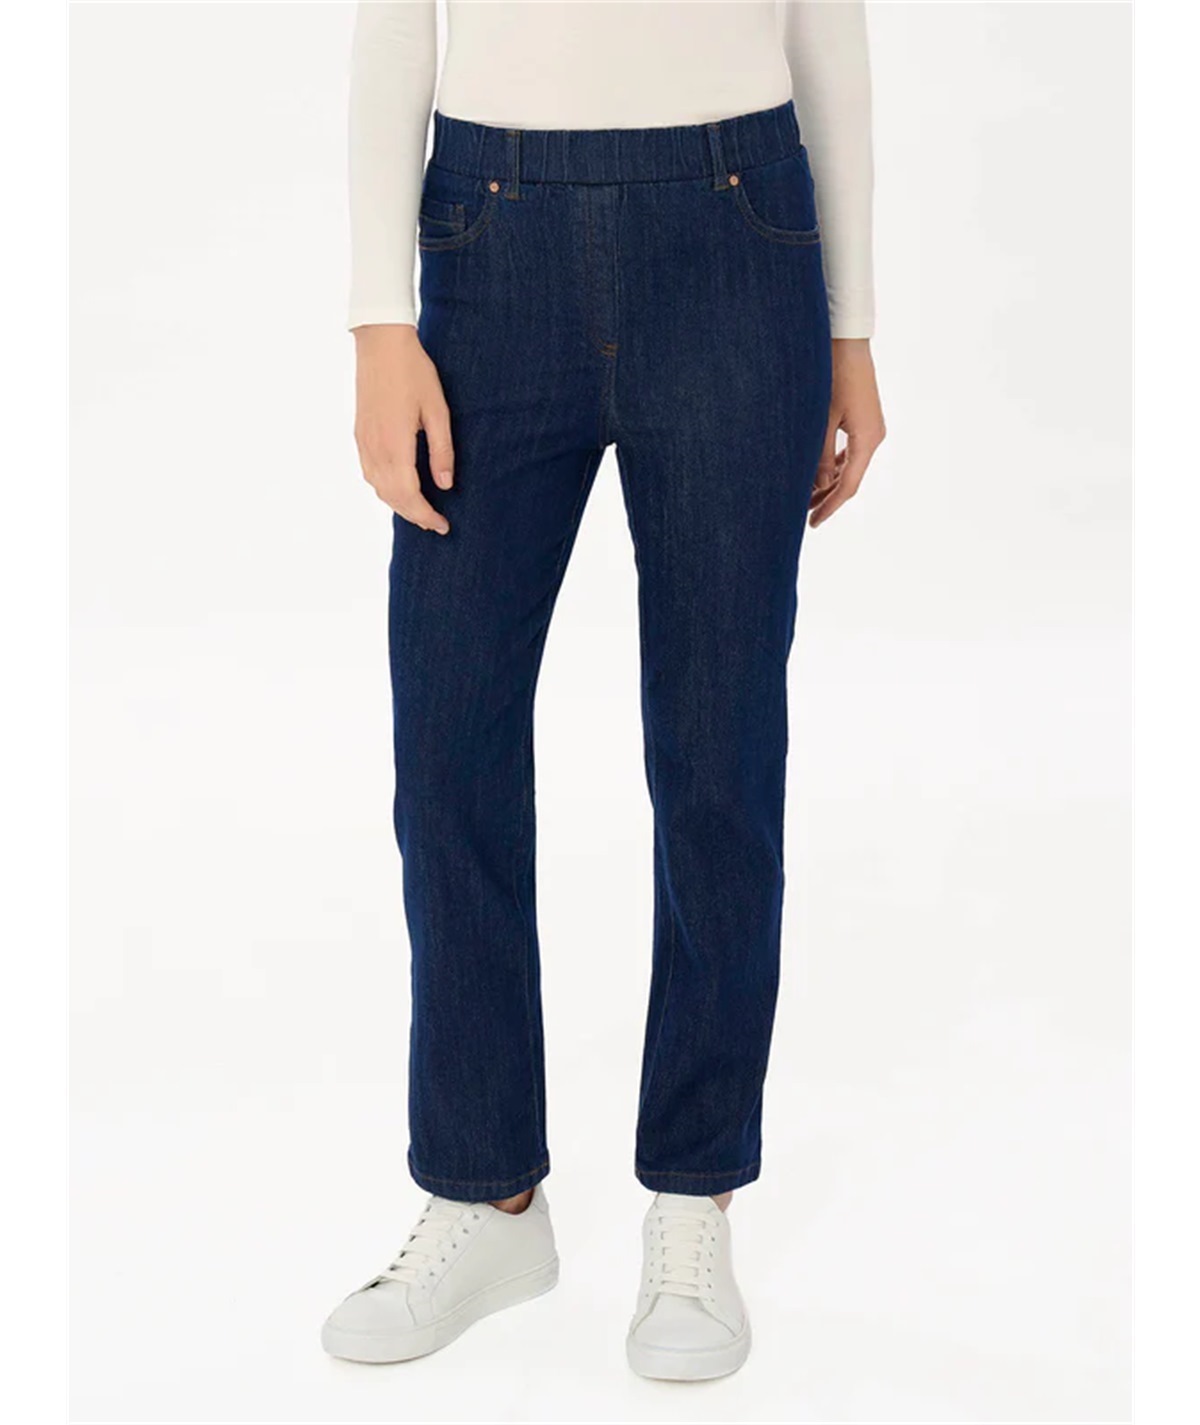 DM48PP- Ragno Jeans modello Slim in tessuto Denim-Comfor. Colore: Bleu Persia 057